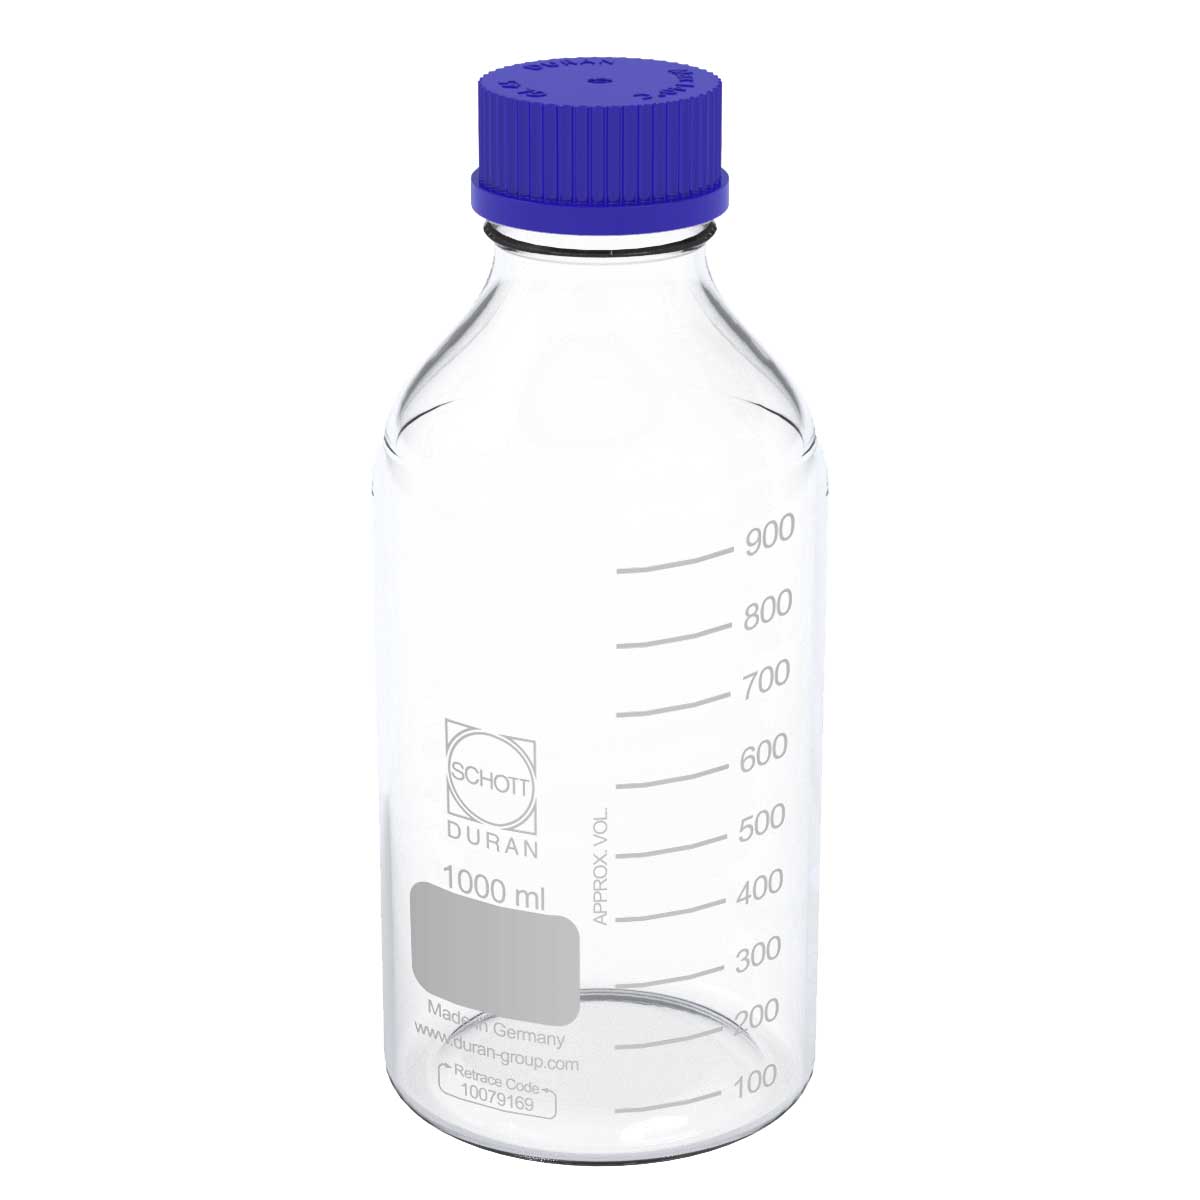 Large Glass Bottles Scientic Supplies Blue Cap